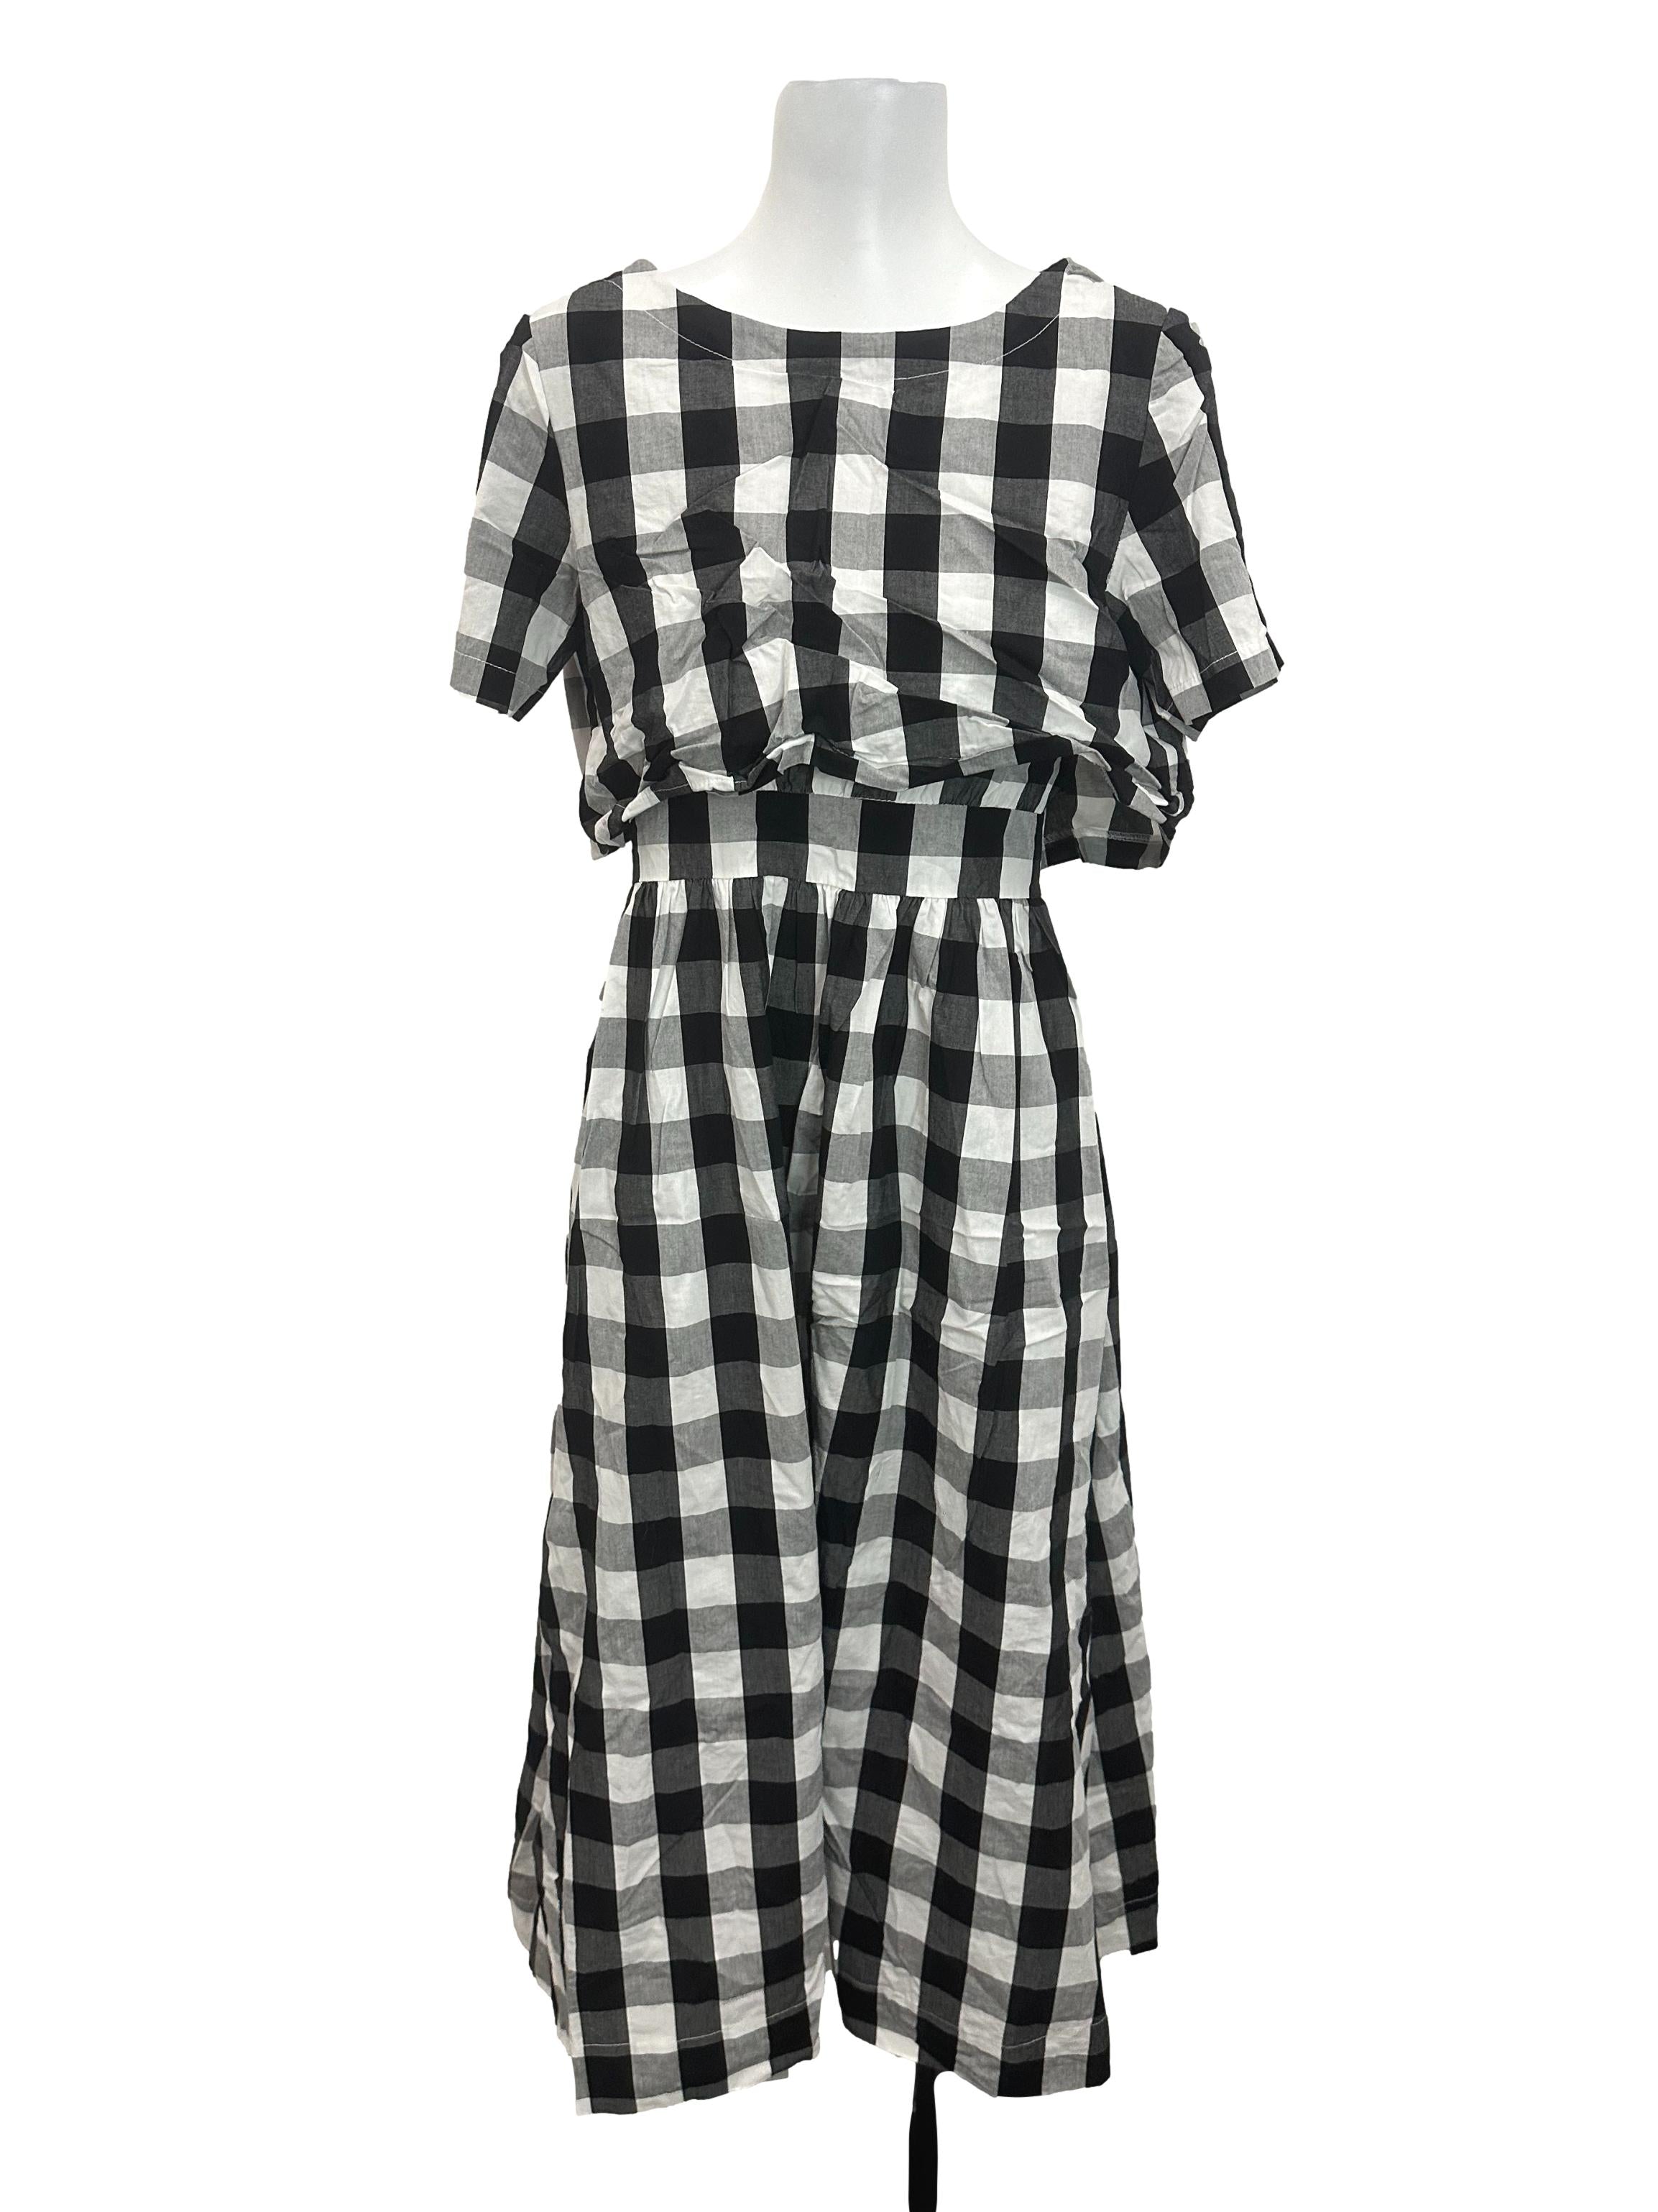 Black White Checkered Dress